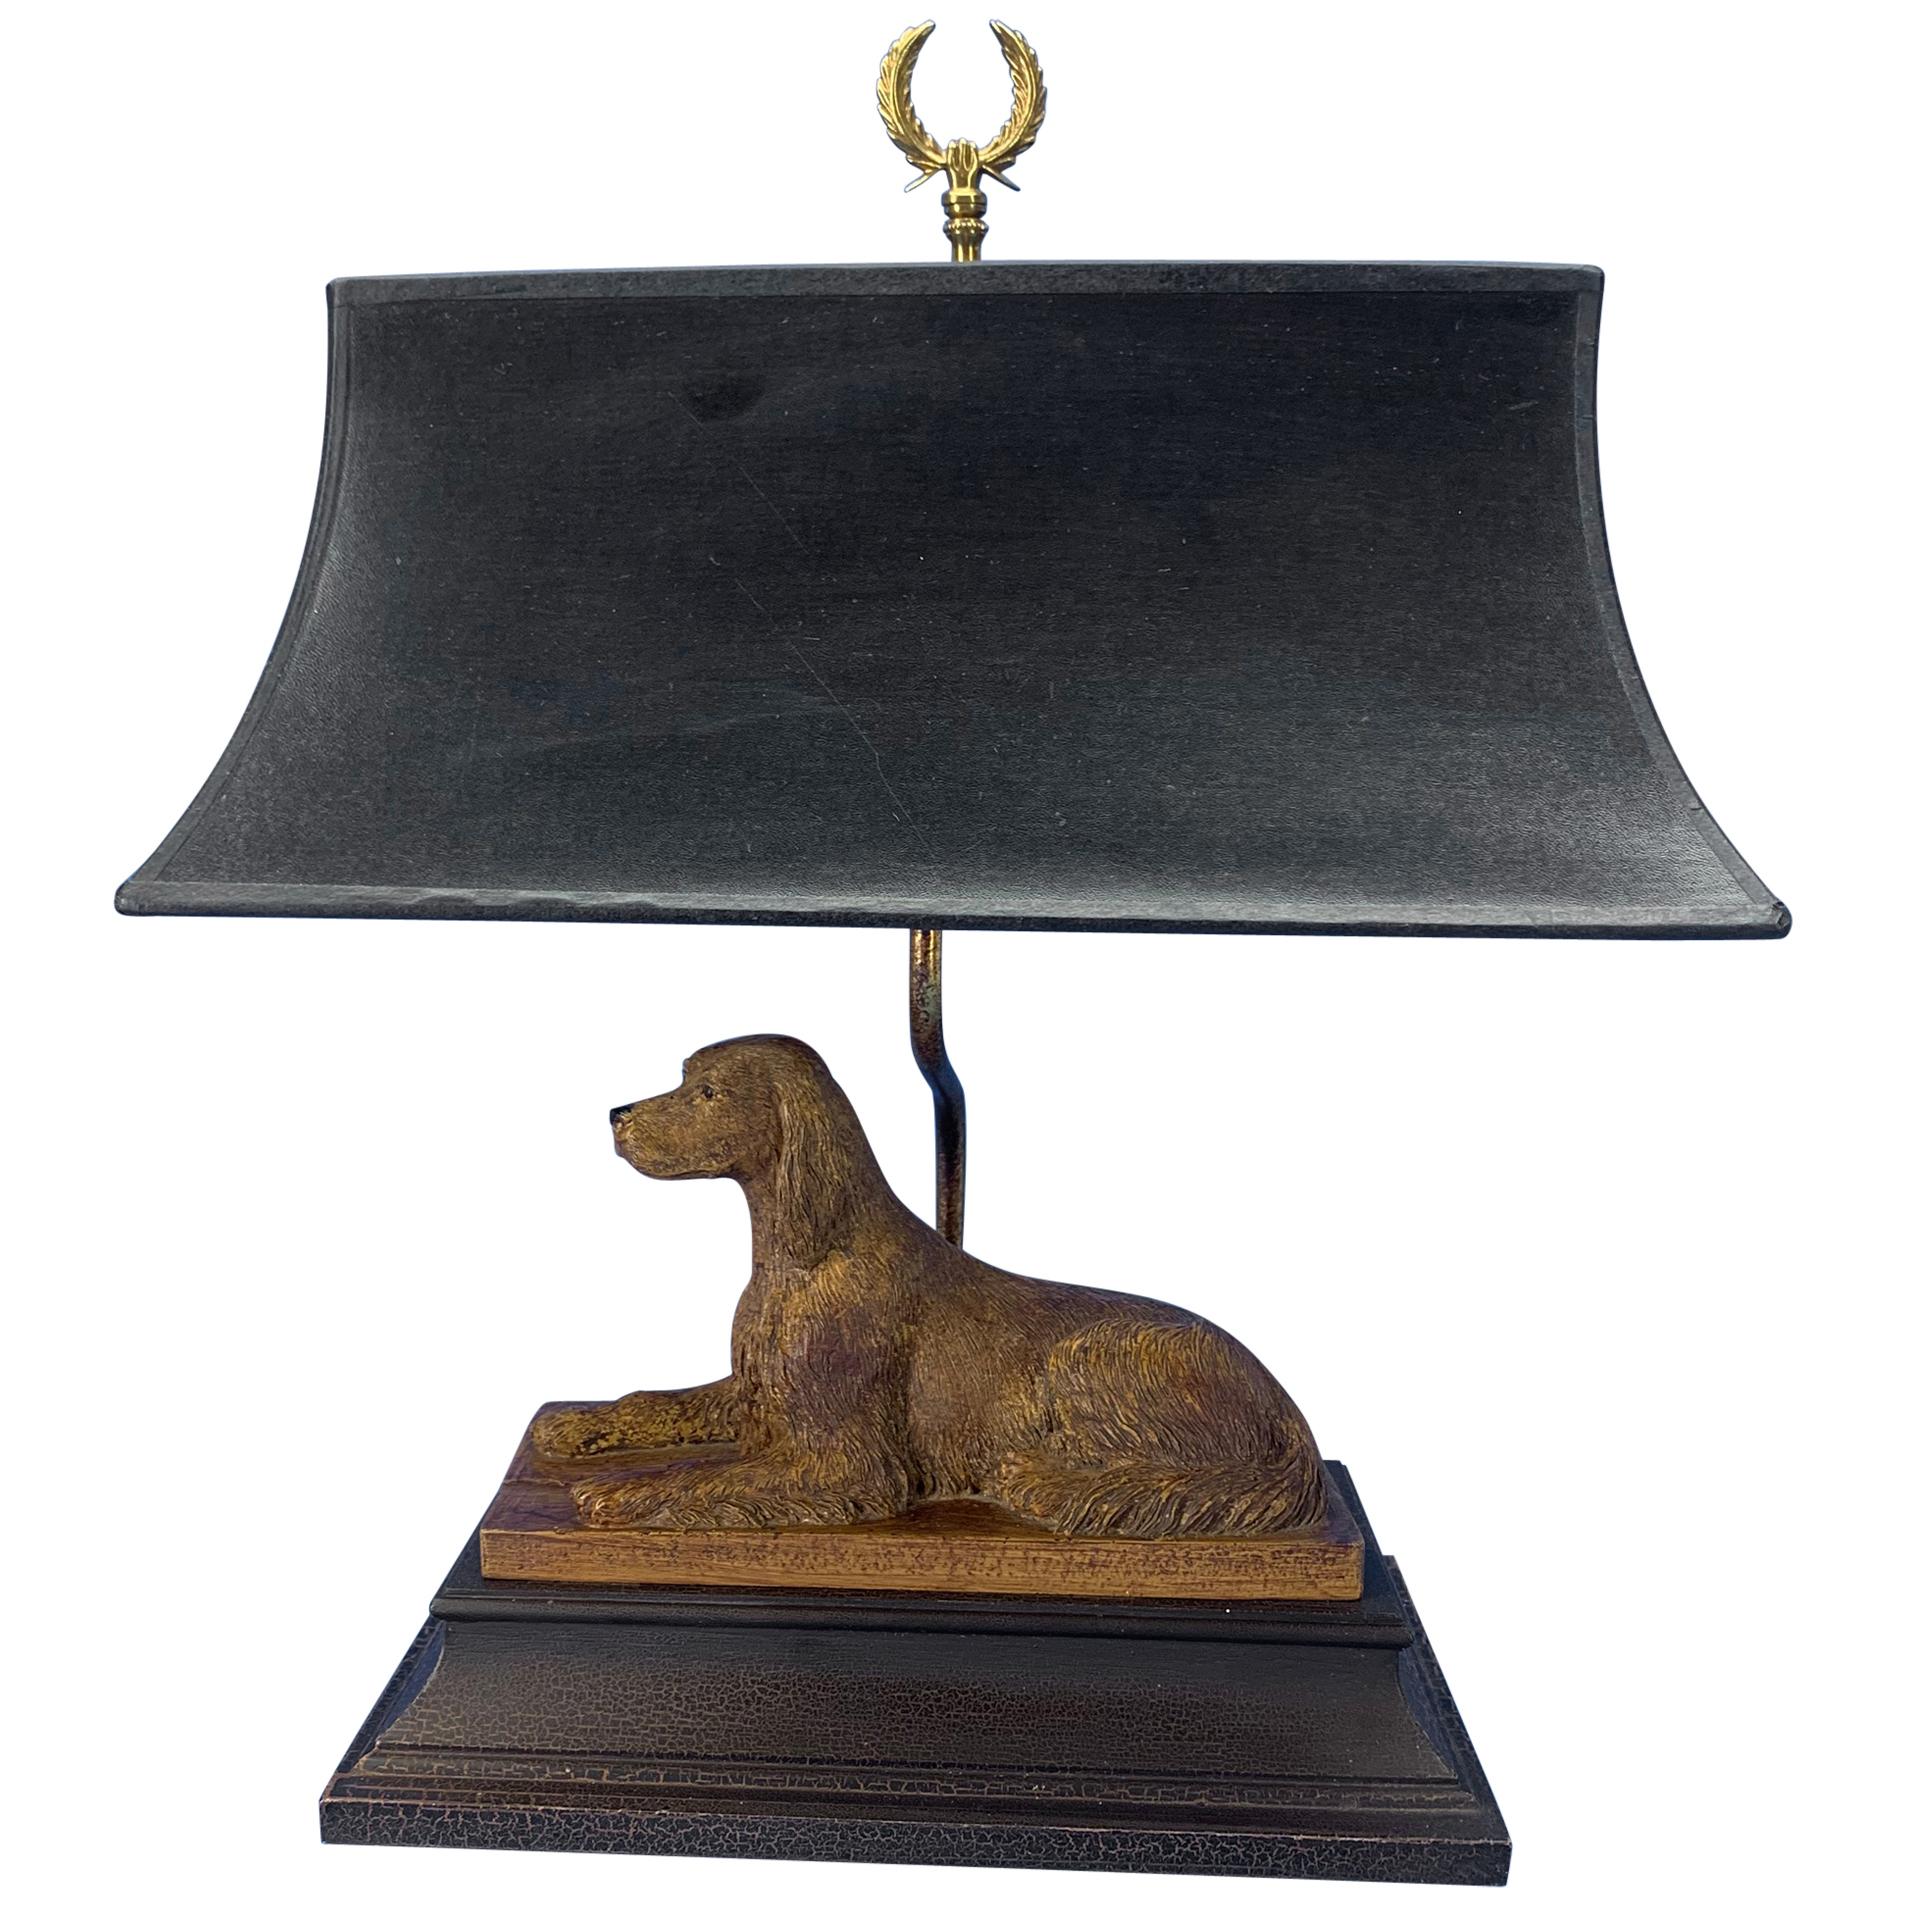 Vintage Dog Sculpture Desk Lamp With Black Shade